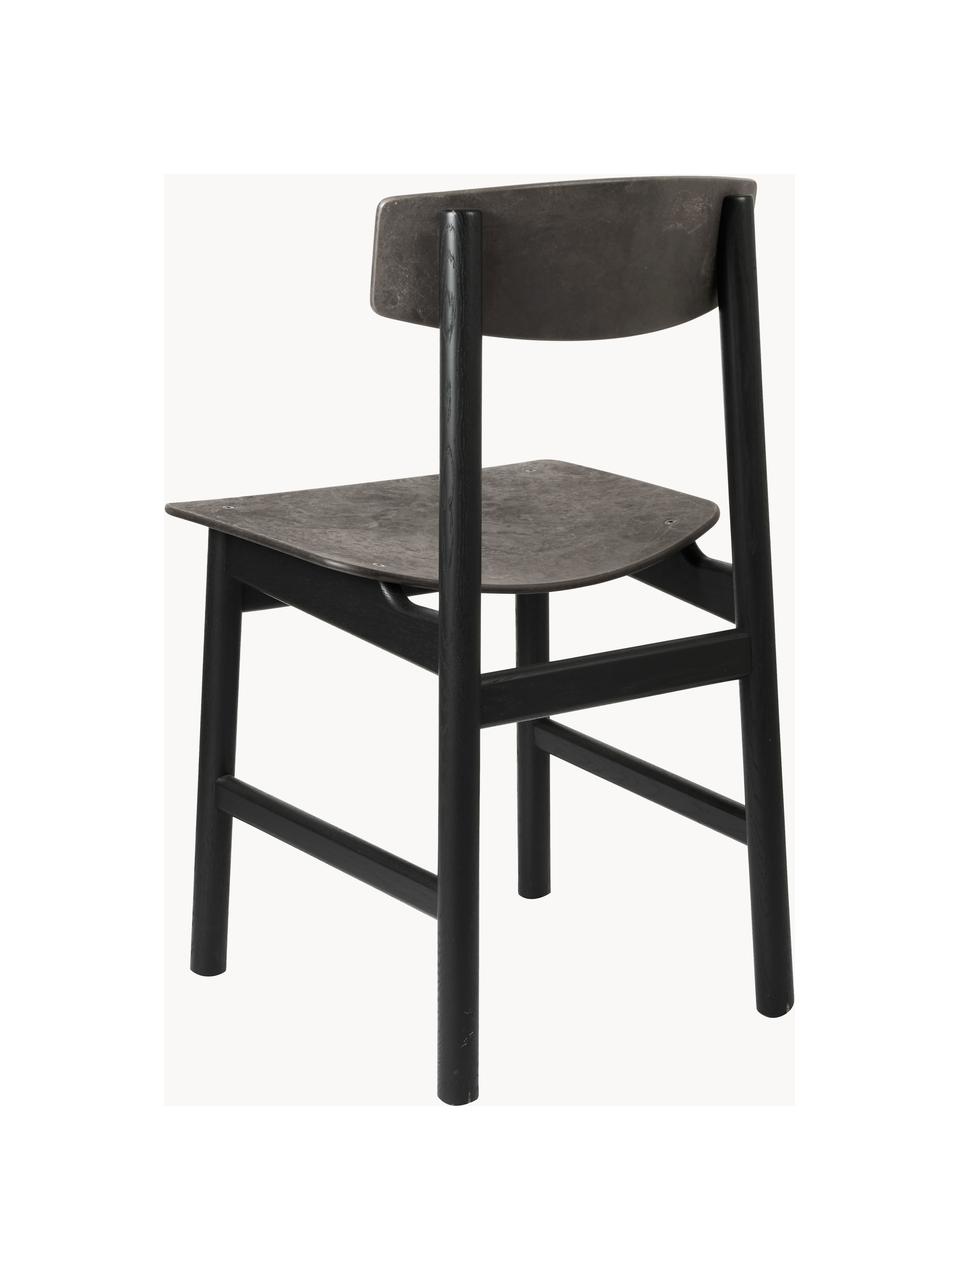 Dřevěná židle Conscious, Antracitová, černá, Š 47 cm, H 47 cm